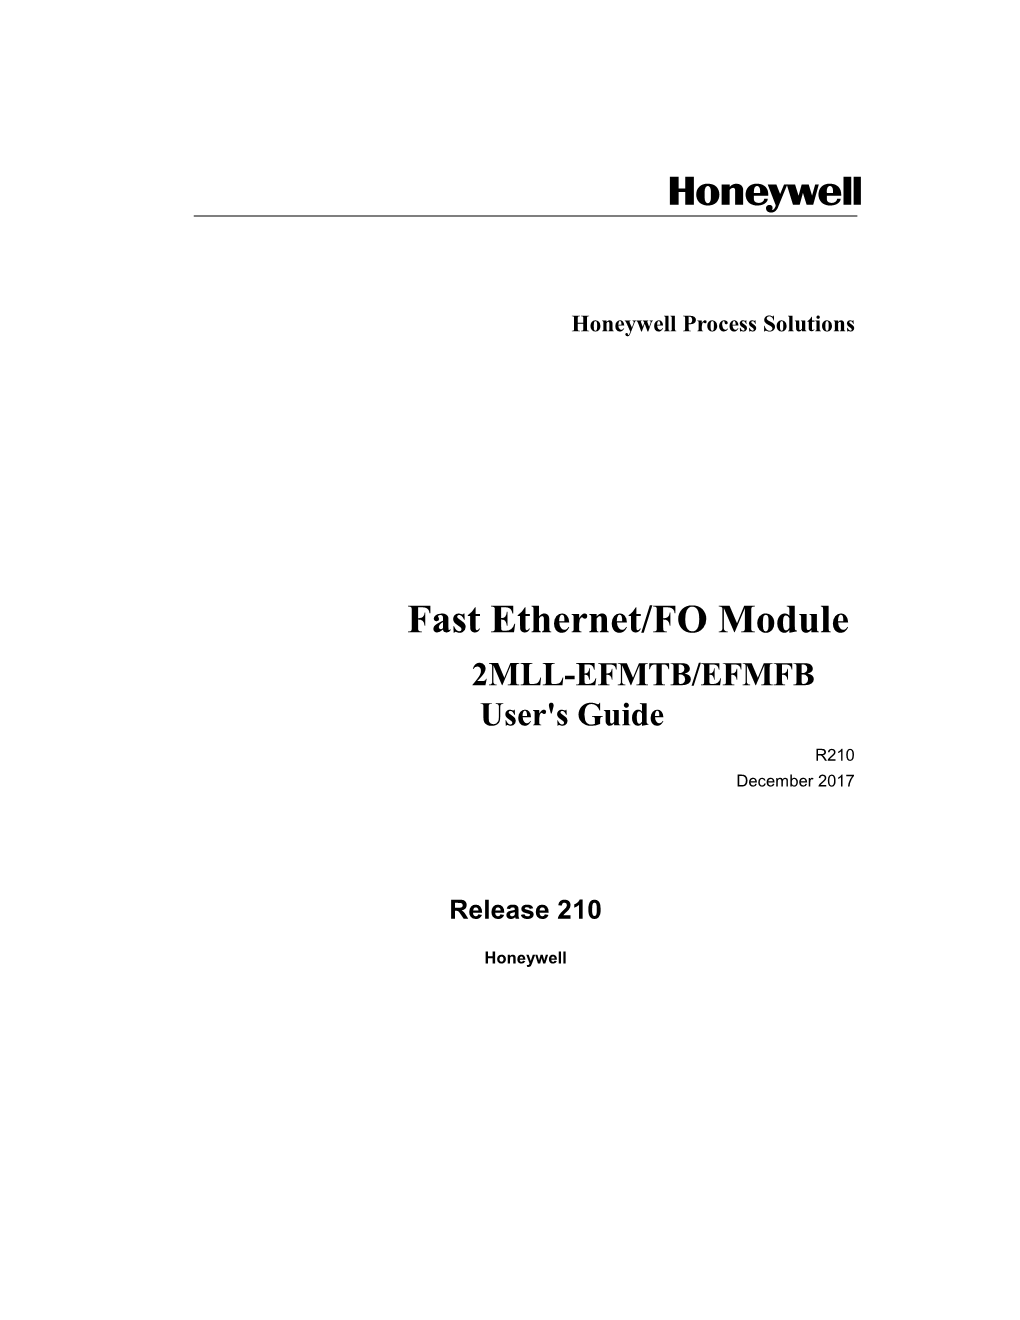 Fast Ethernet/FO Module 2MLL-EFMTB/EFMFB User's Guide R210 December 2017